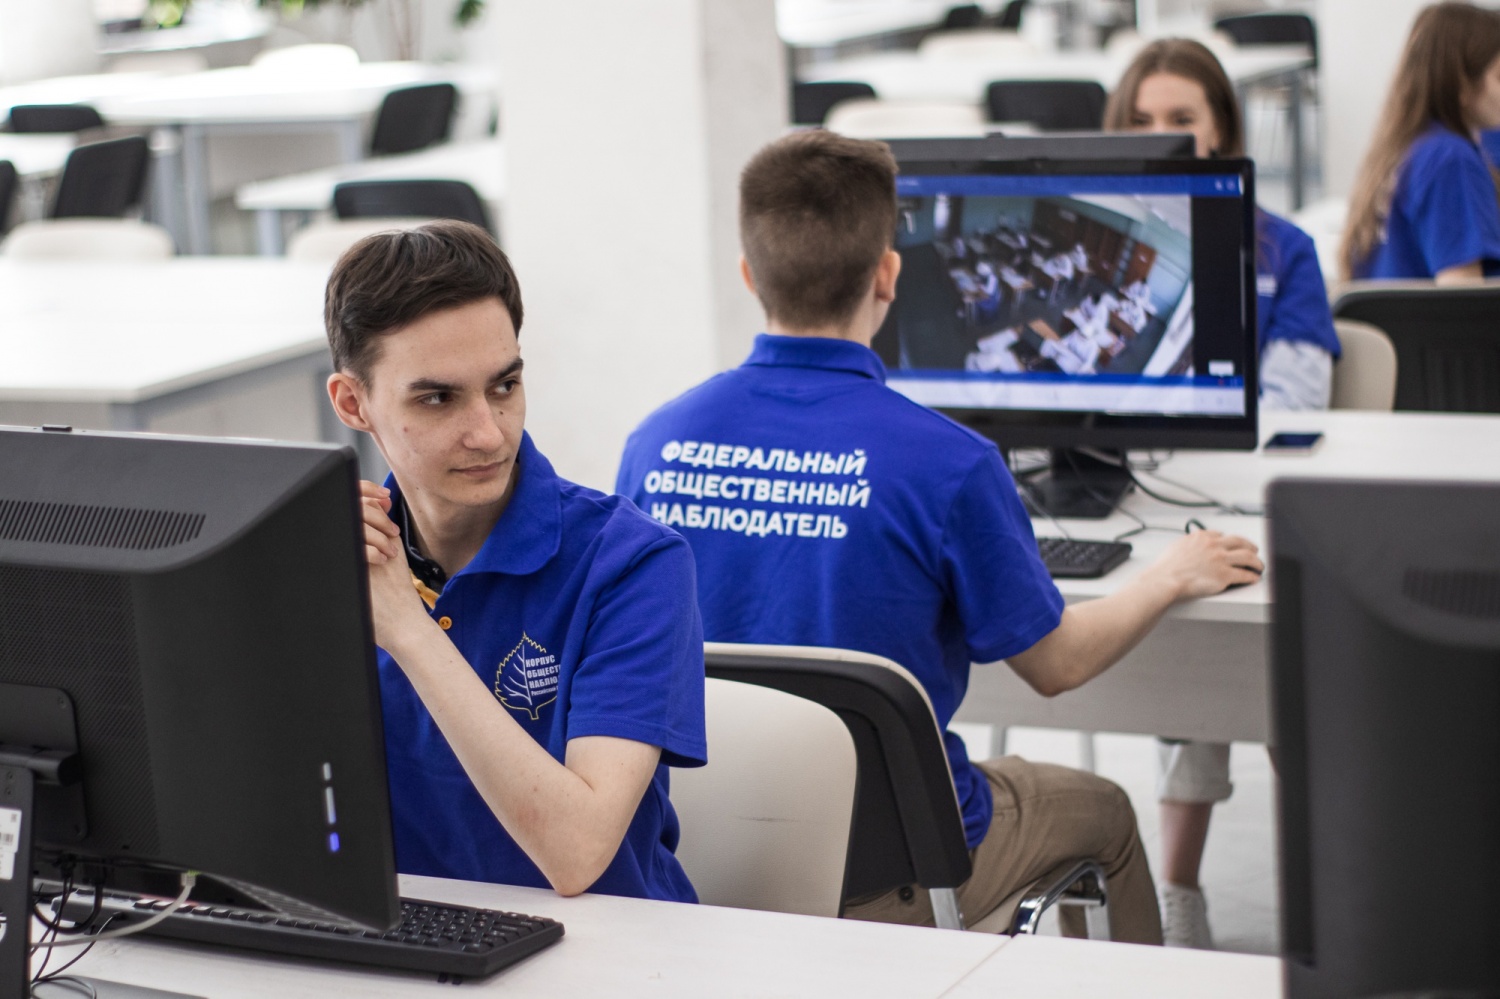 Российский Союз Молодежи начал подготовку волонтеров Корпуса общественных наблюдателей для участия в мониторинге досрочного периода ГИА-2023 года